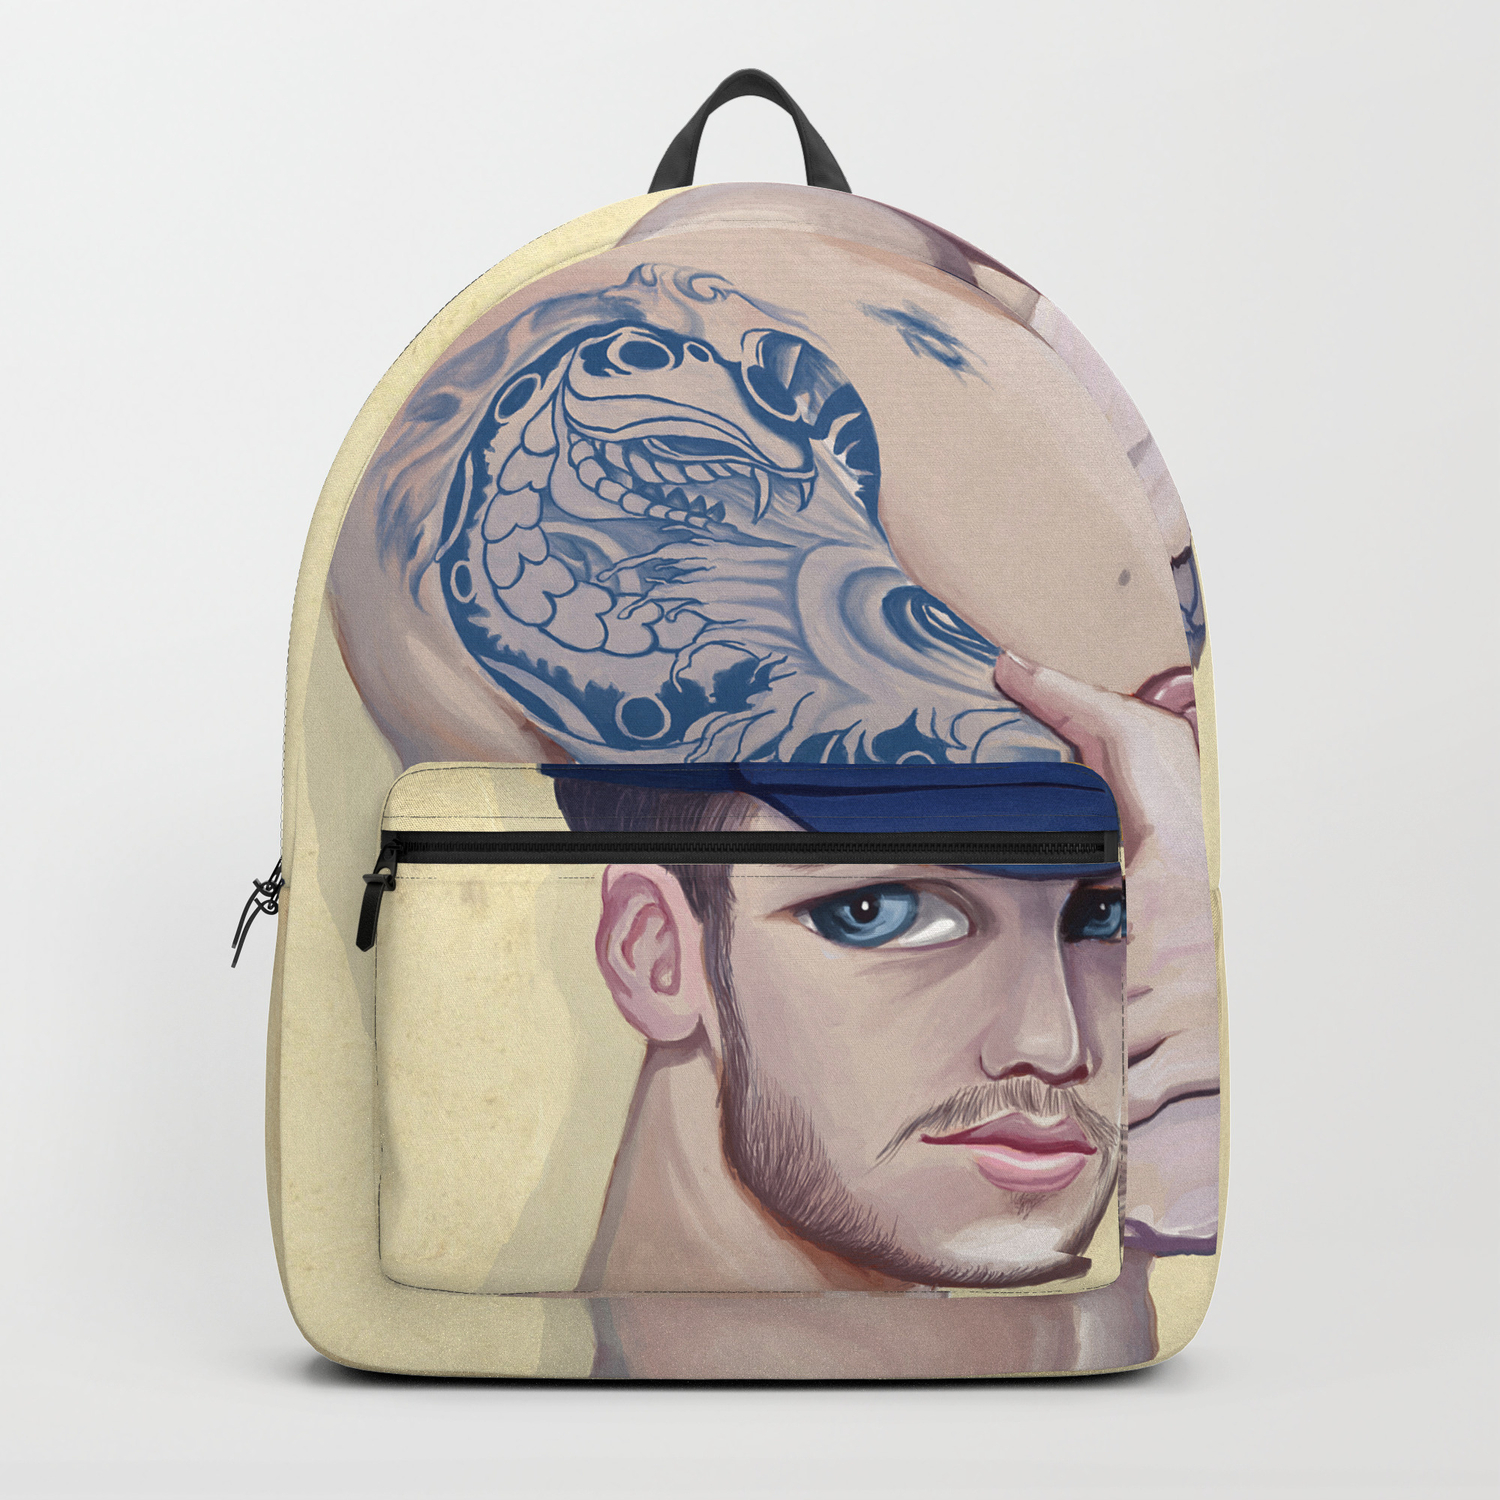 MATTHEW CAMP Backpack by KSPER